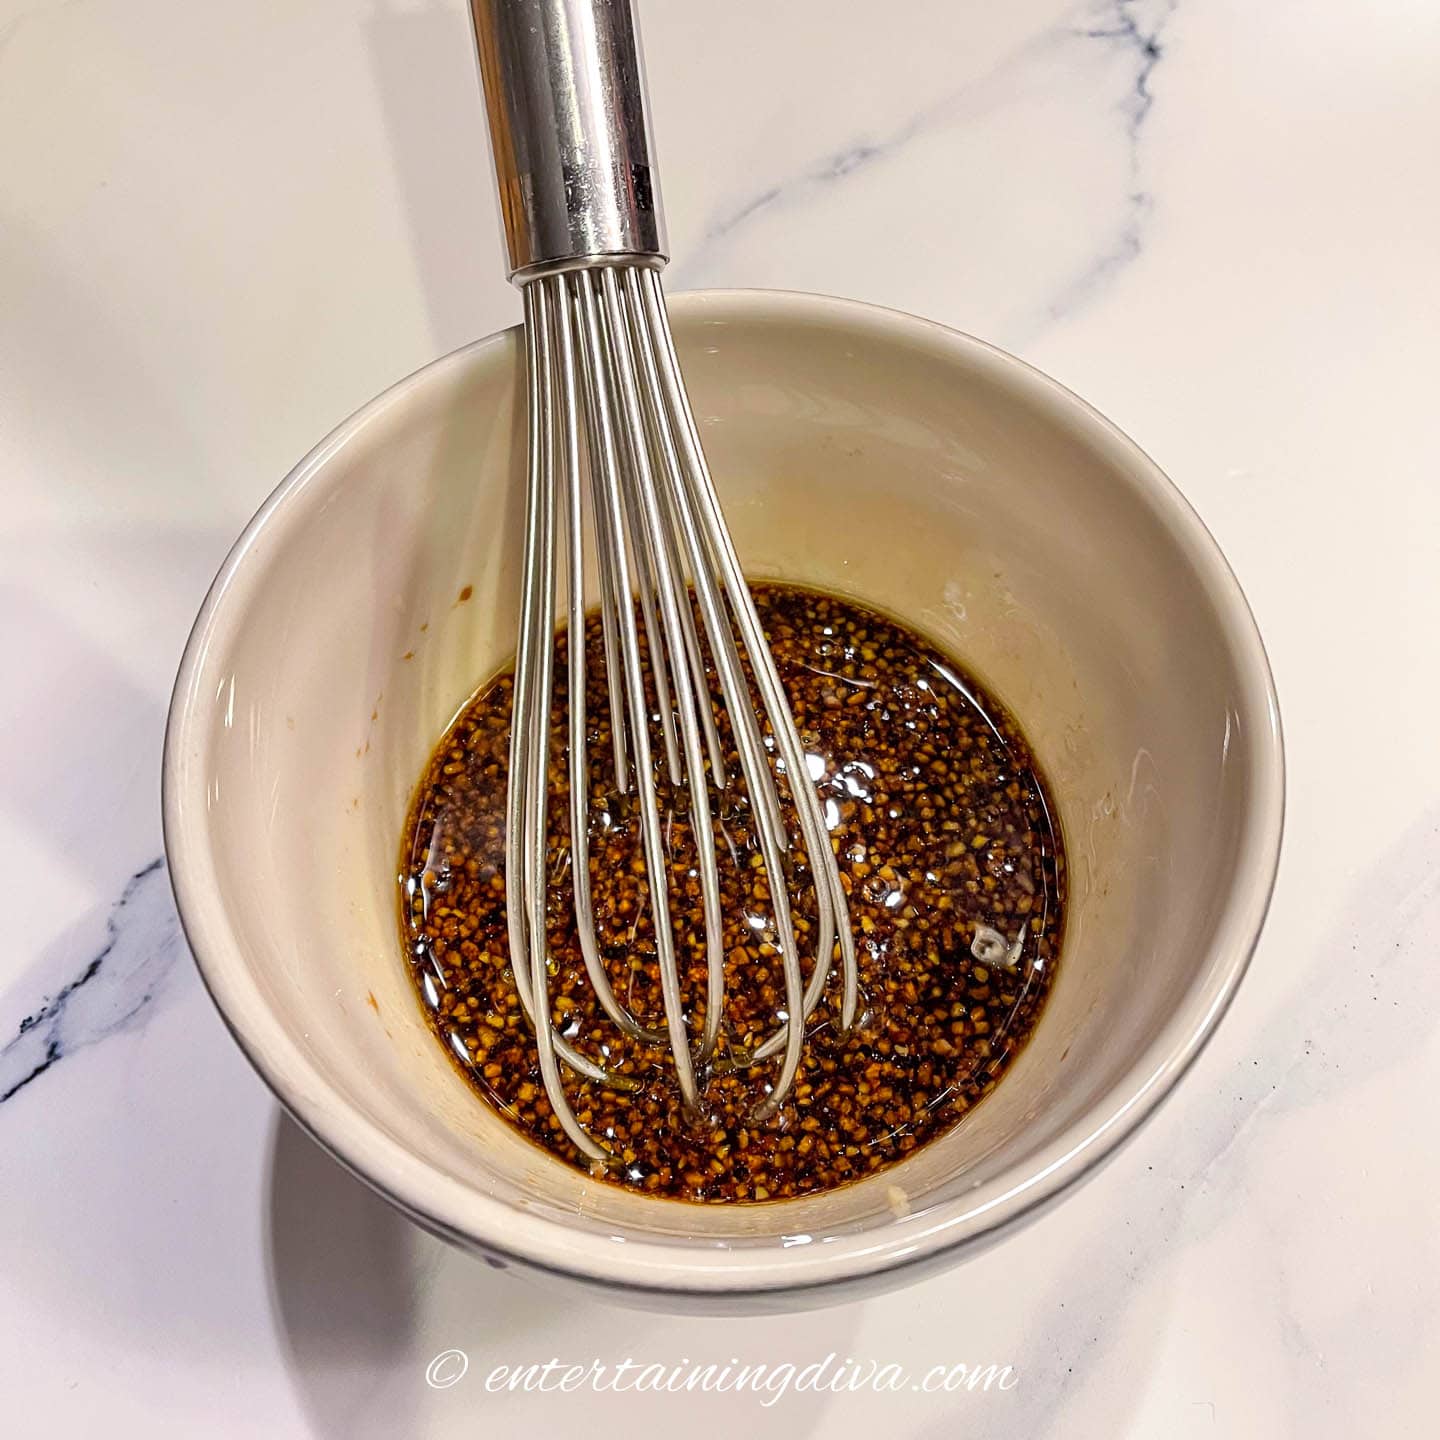 soy sauce, brown sugar and garlic marinade in a small bowl